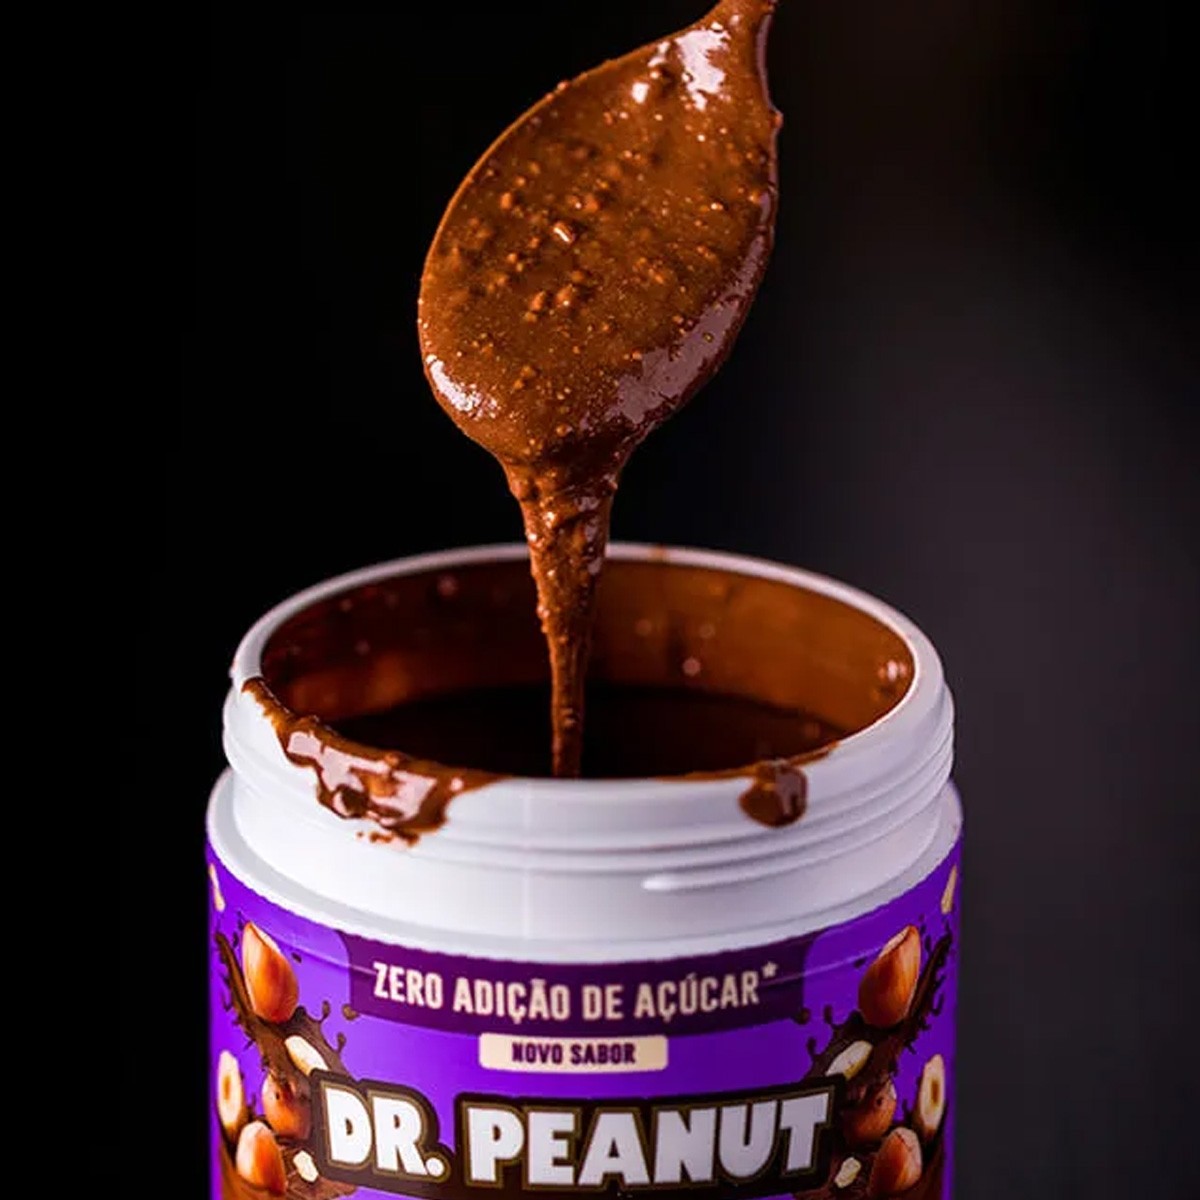 Pasta De Amendoim Avelã Dr. Peanut - 650g